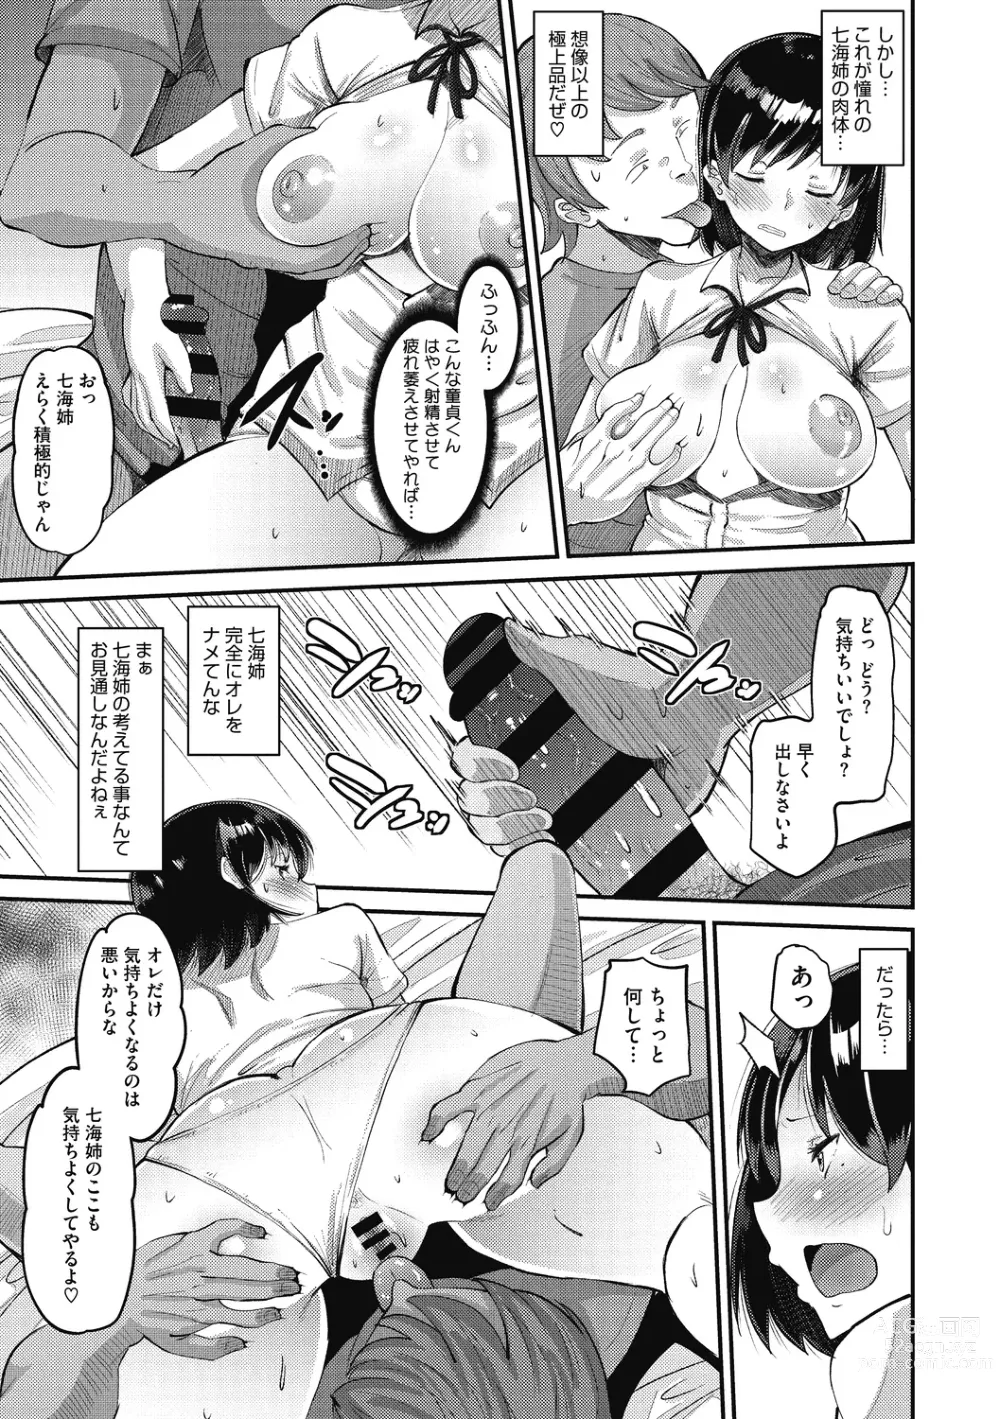 Page 17 of manga Soku Hame Kanojo Kareshi ni Zettai Naisho no Nakadashi Koibito Keiyaku